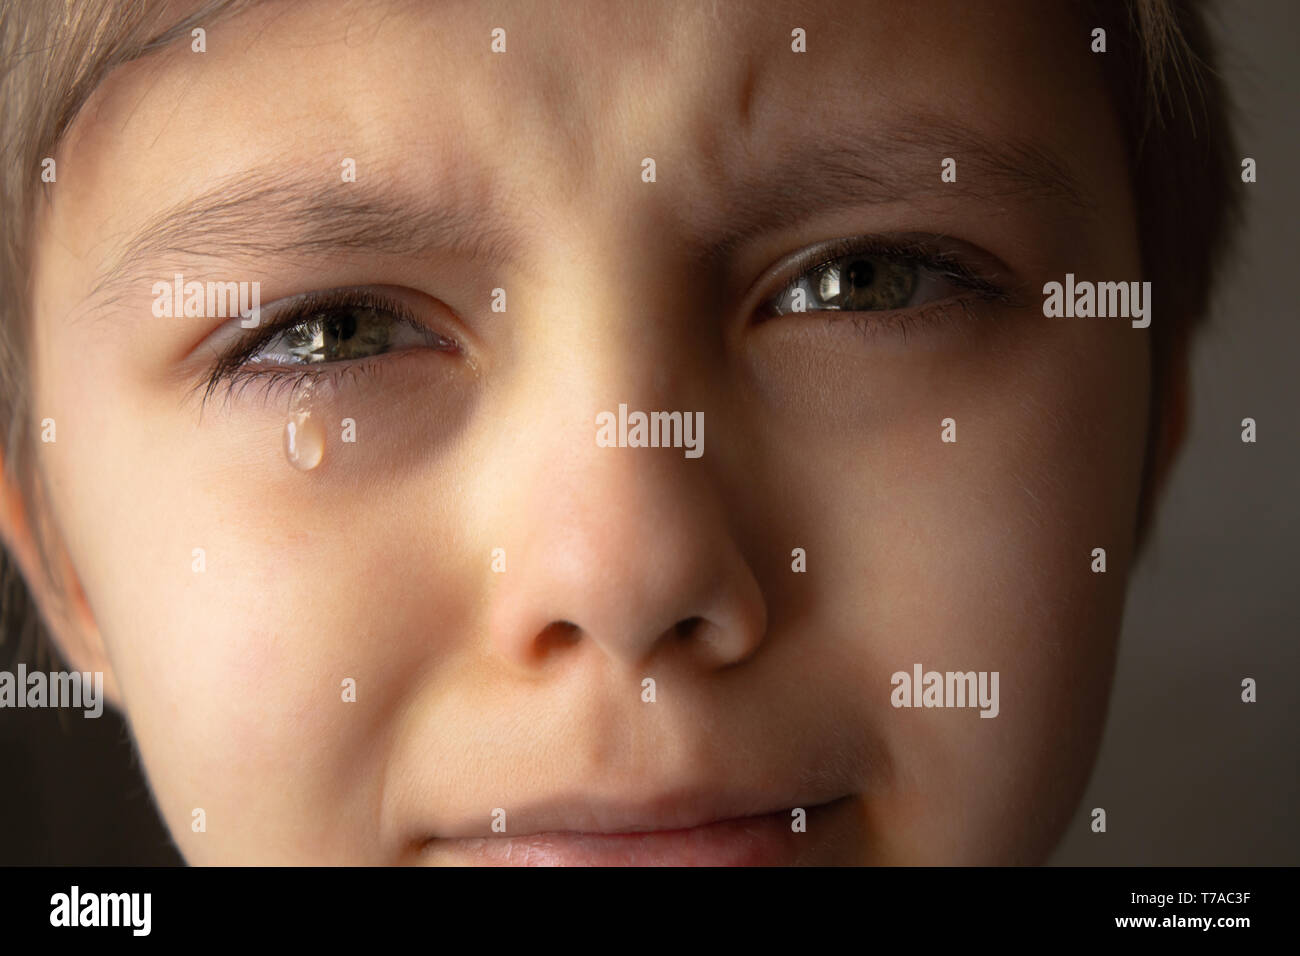 Des larmes dans les yeux d'un enfant. Une larme sur la joue du garçon. Close-up. Photo en noir et blanc. Banque D'Images